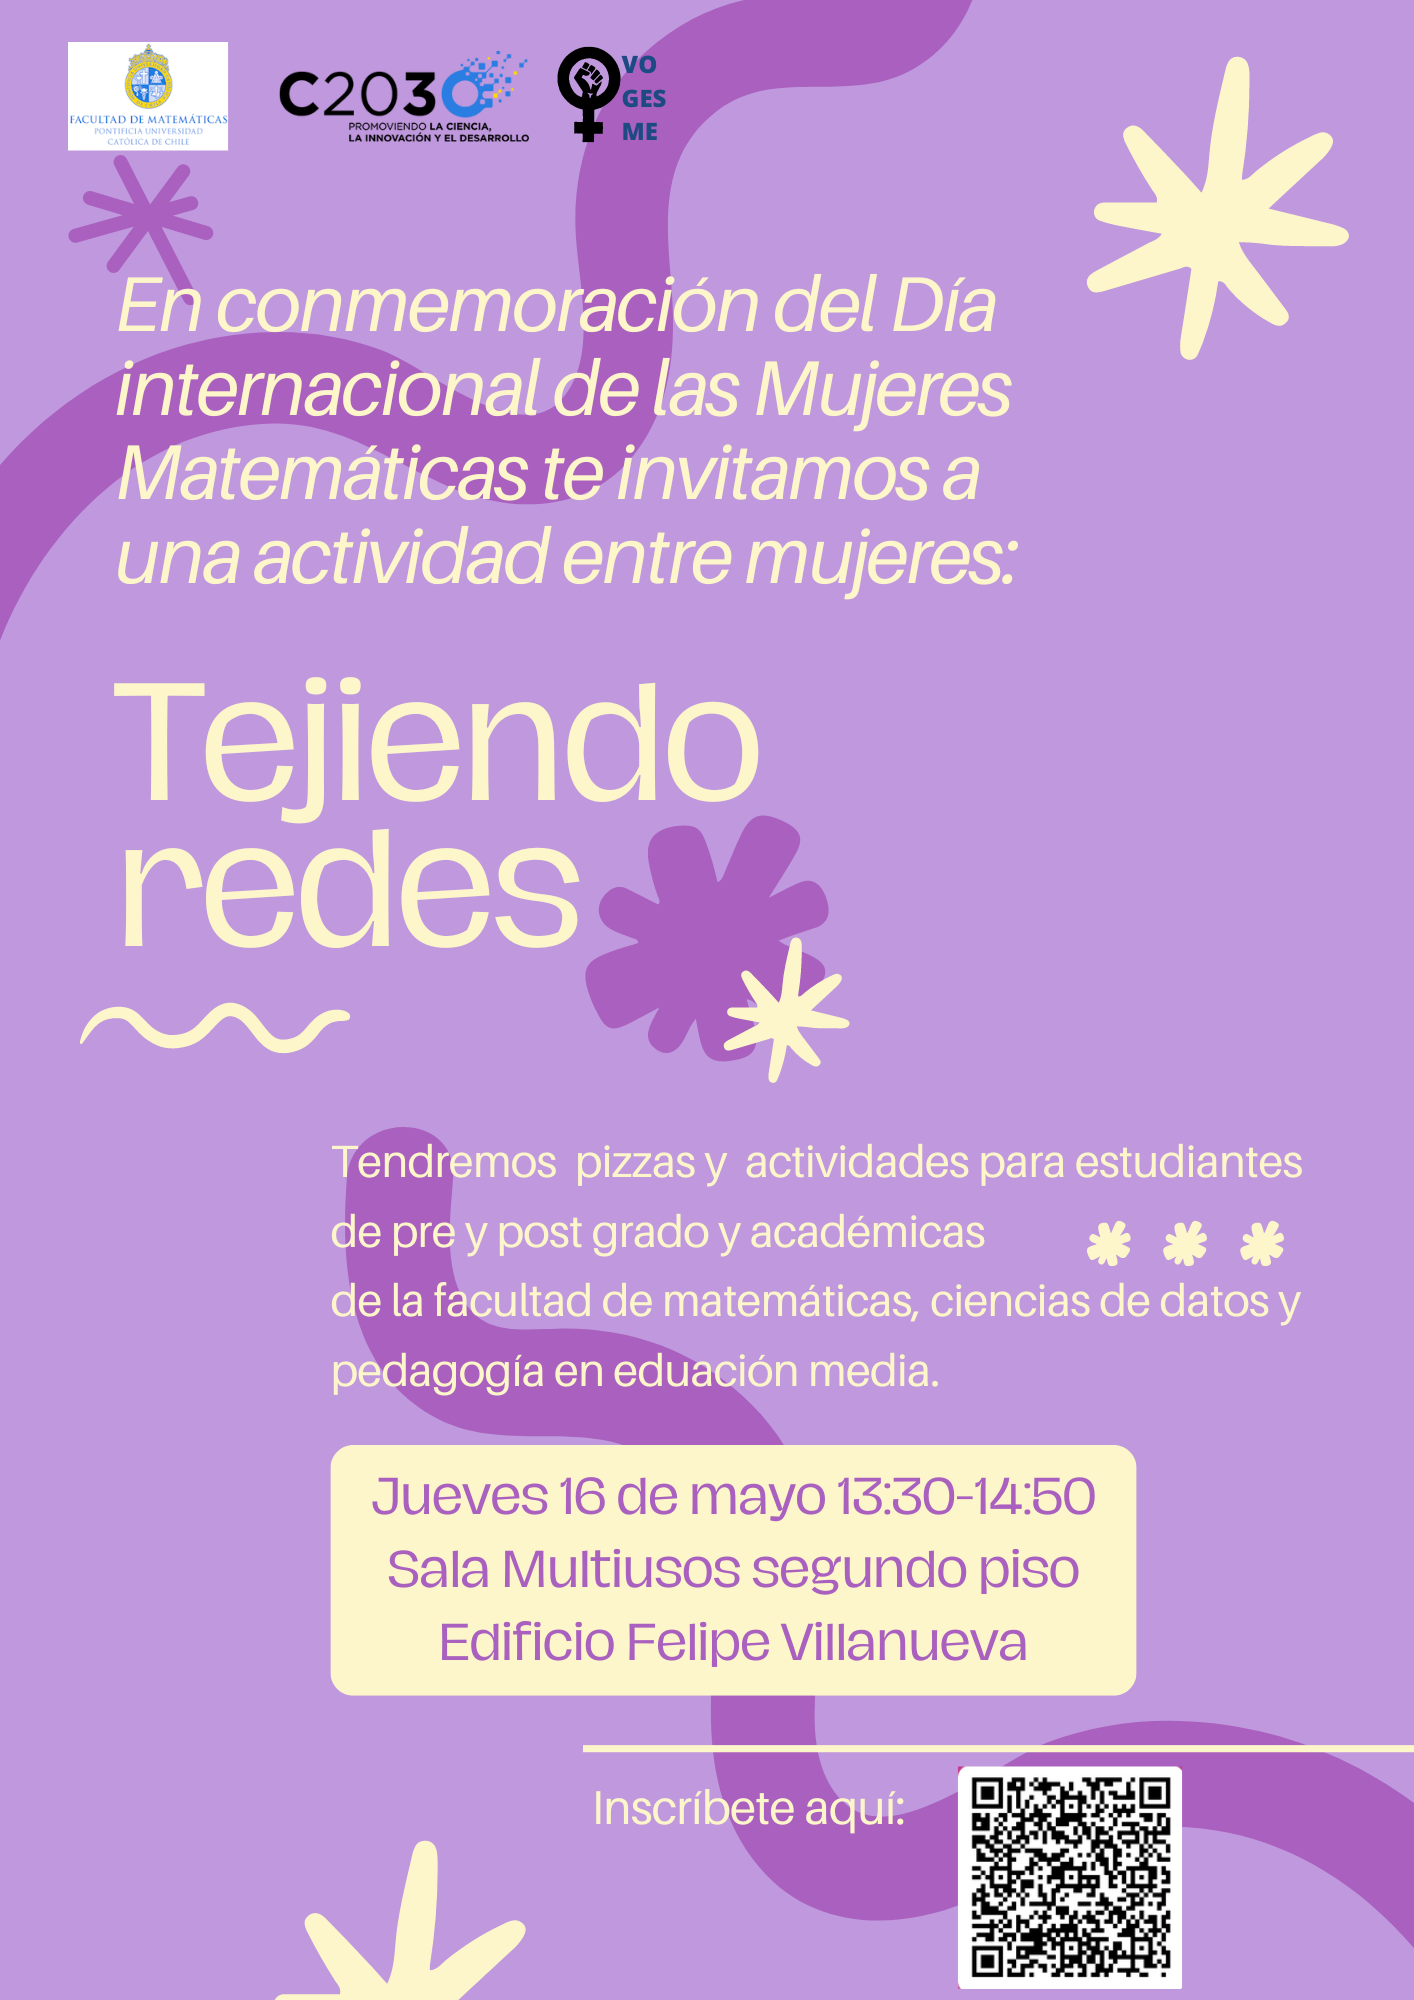 Afiche de evento demorado. En el centro título "En Conmemoración del Día Internacional de las Mujeres en Matemáticas, Tejiendo Redes"